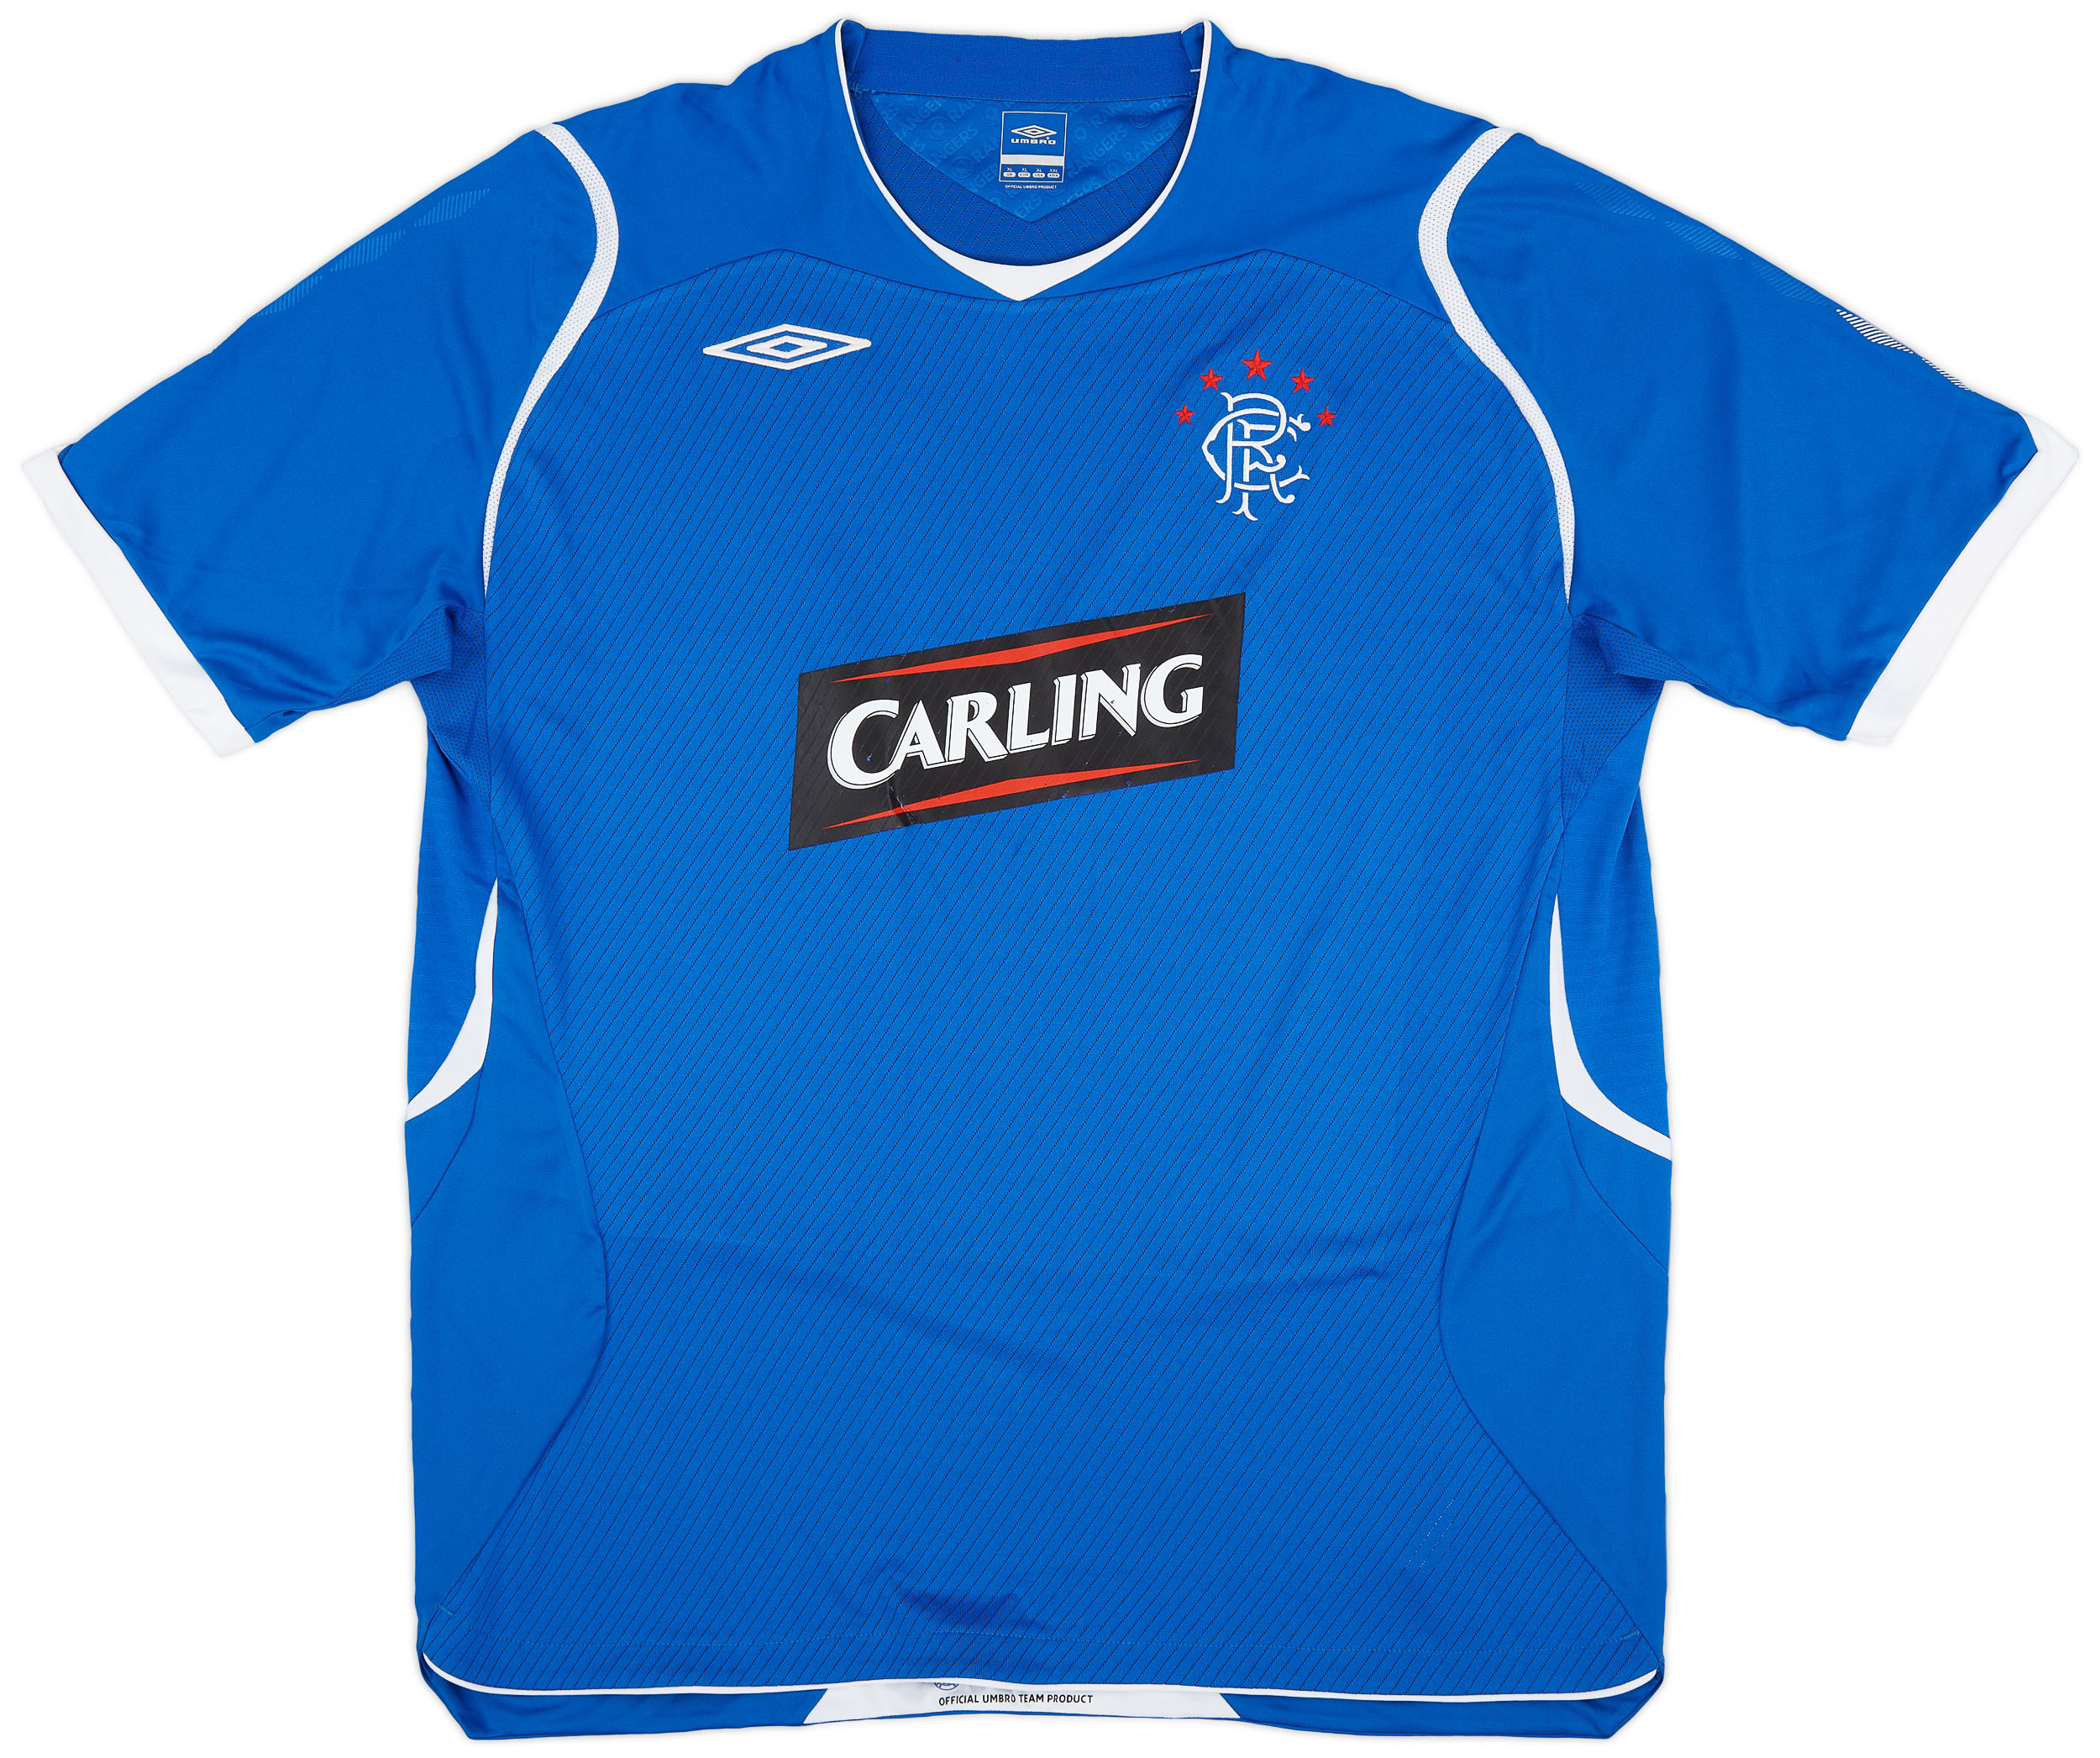 2008-09 Rangers Home Shirt - 6/10 - ()